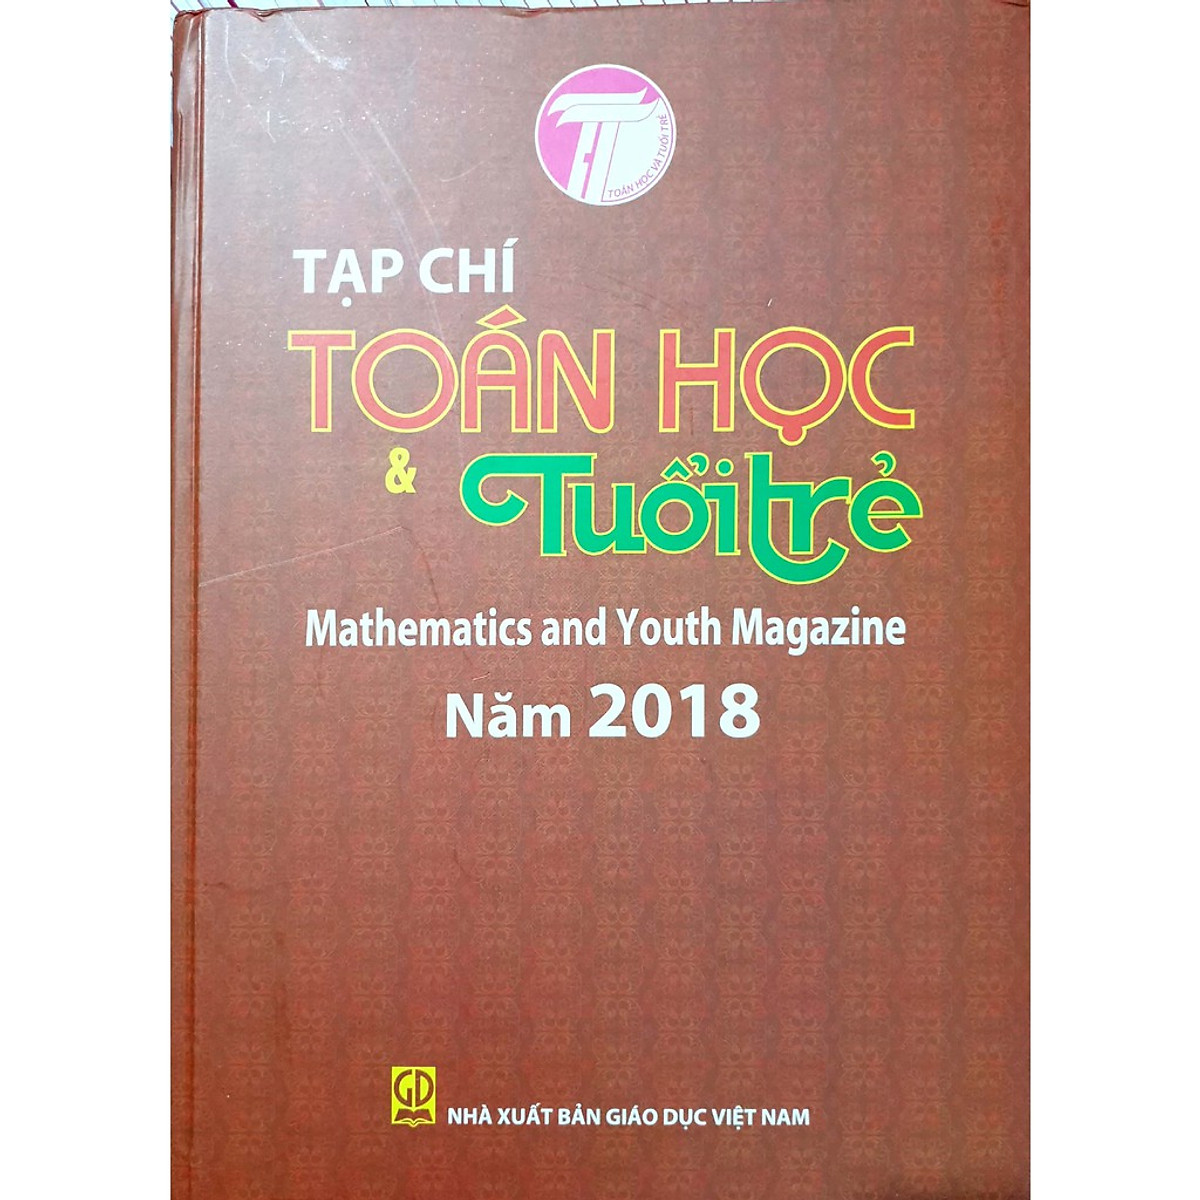 Tạp chí Toán học và Tuổi trẻ năm 2018